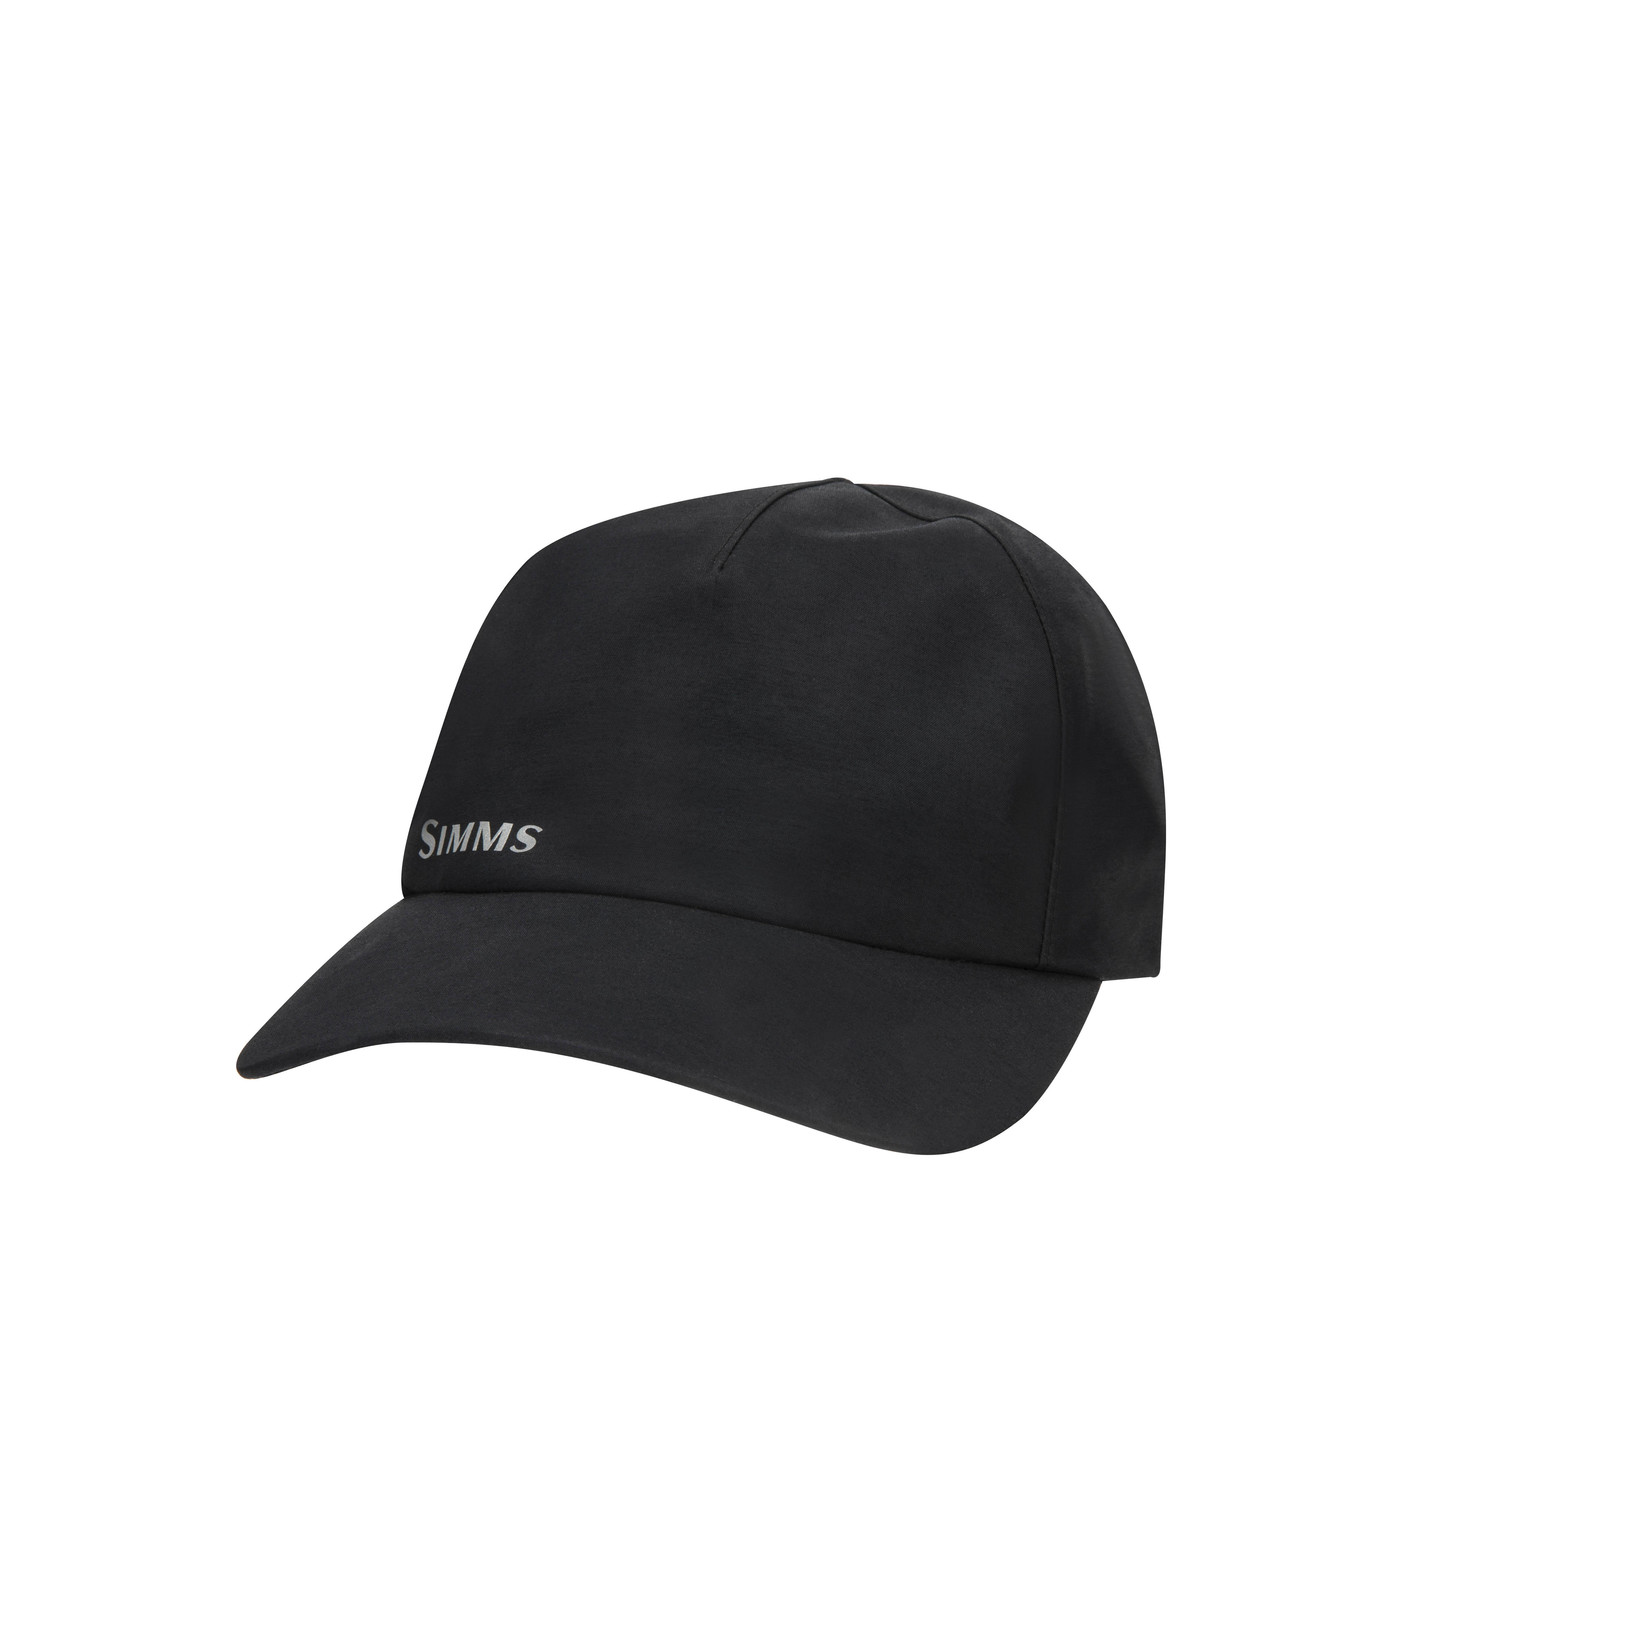 Simms GORE-TEX Rain Cap - Black L/XL